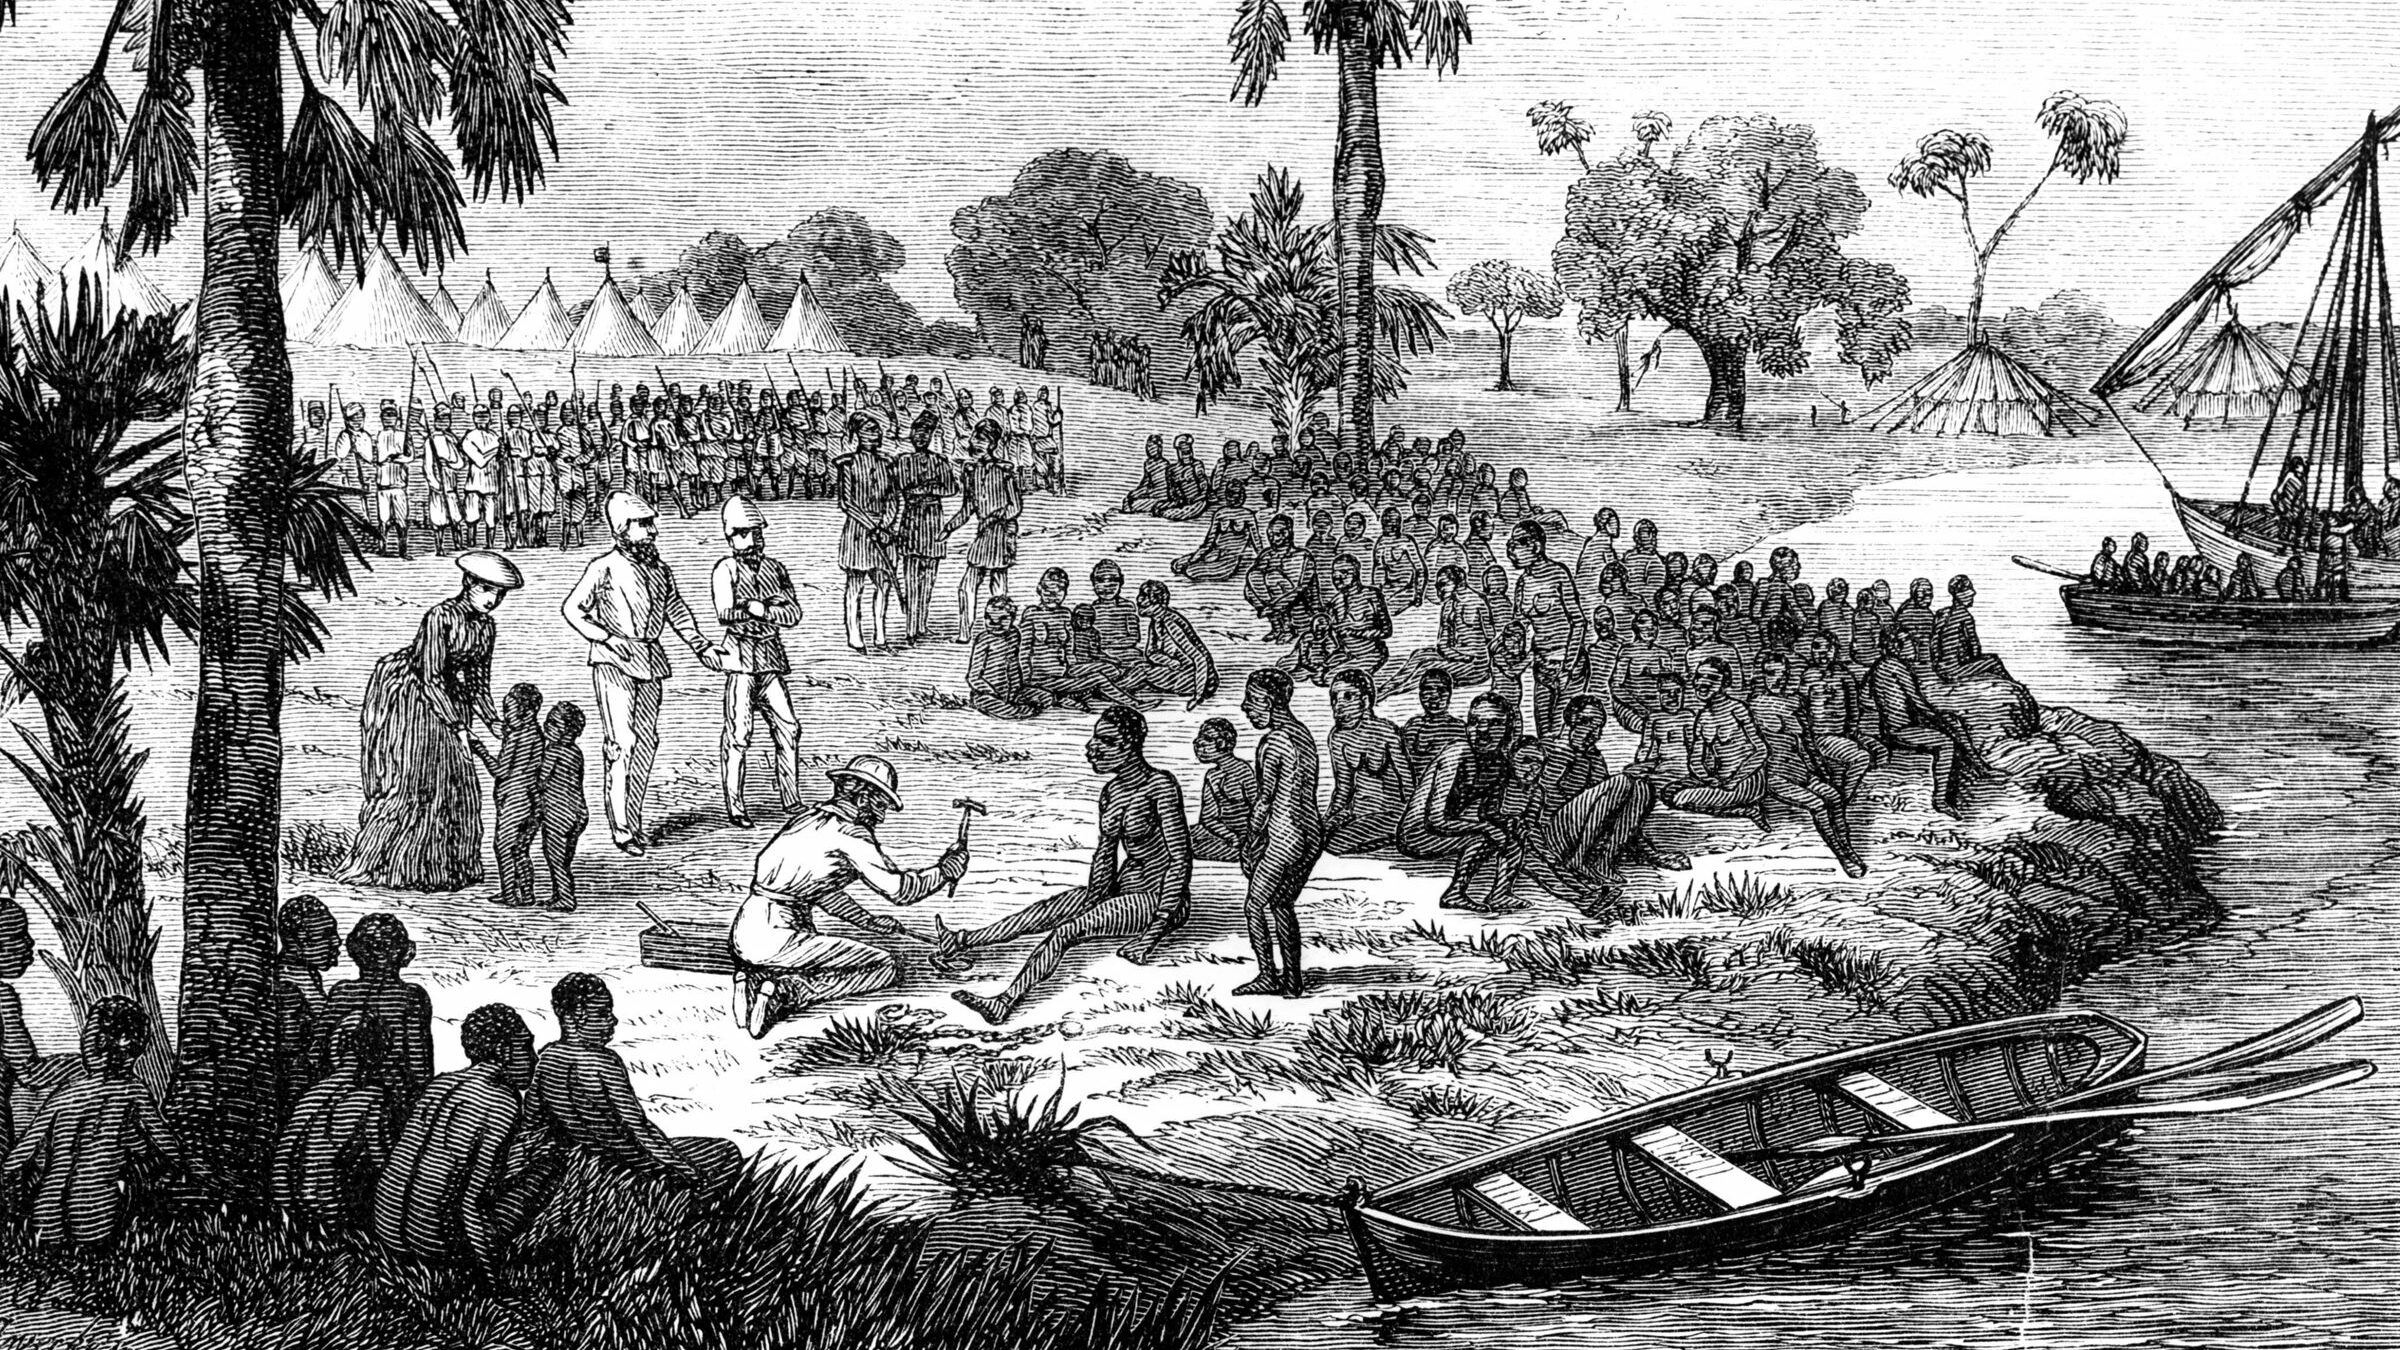 奴隶被解放奴隶船后没收了1861年。苏丹和其他国家的贸易持续十年。